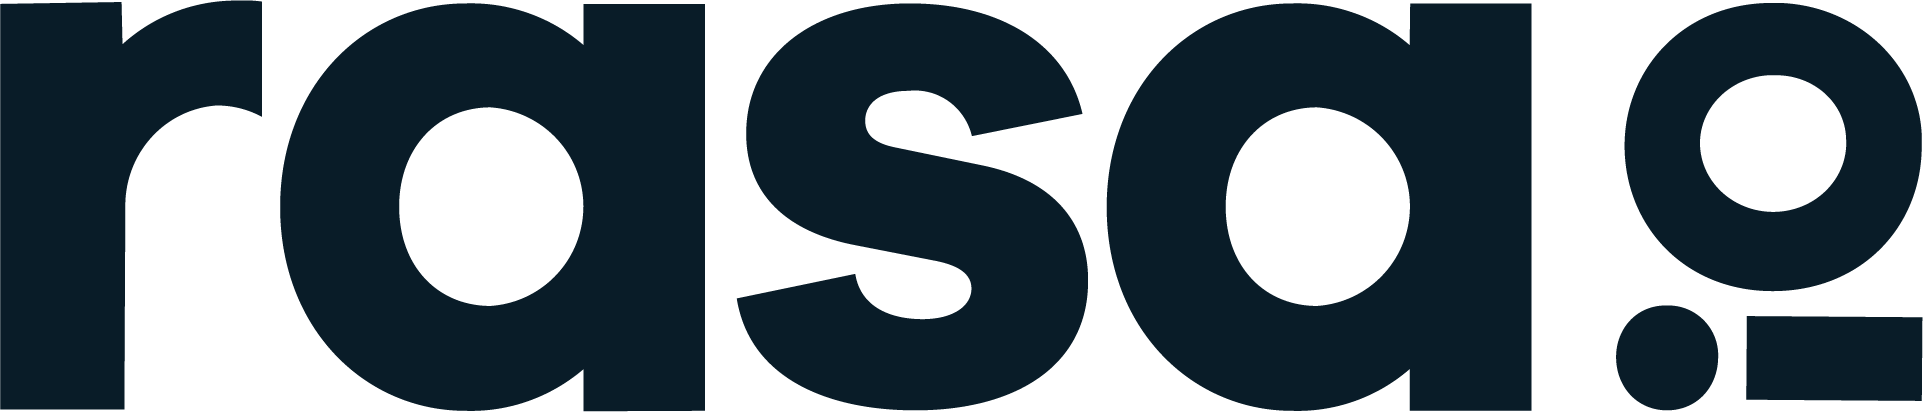 rasa.io for Associations logo